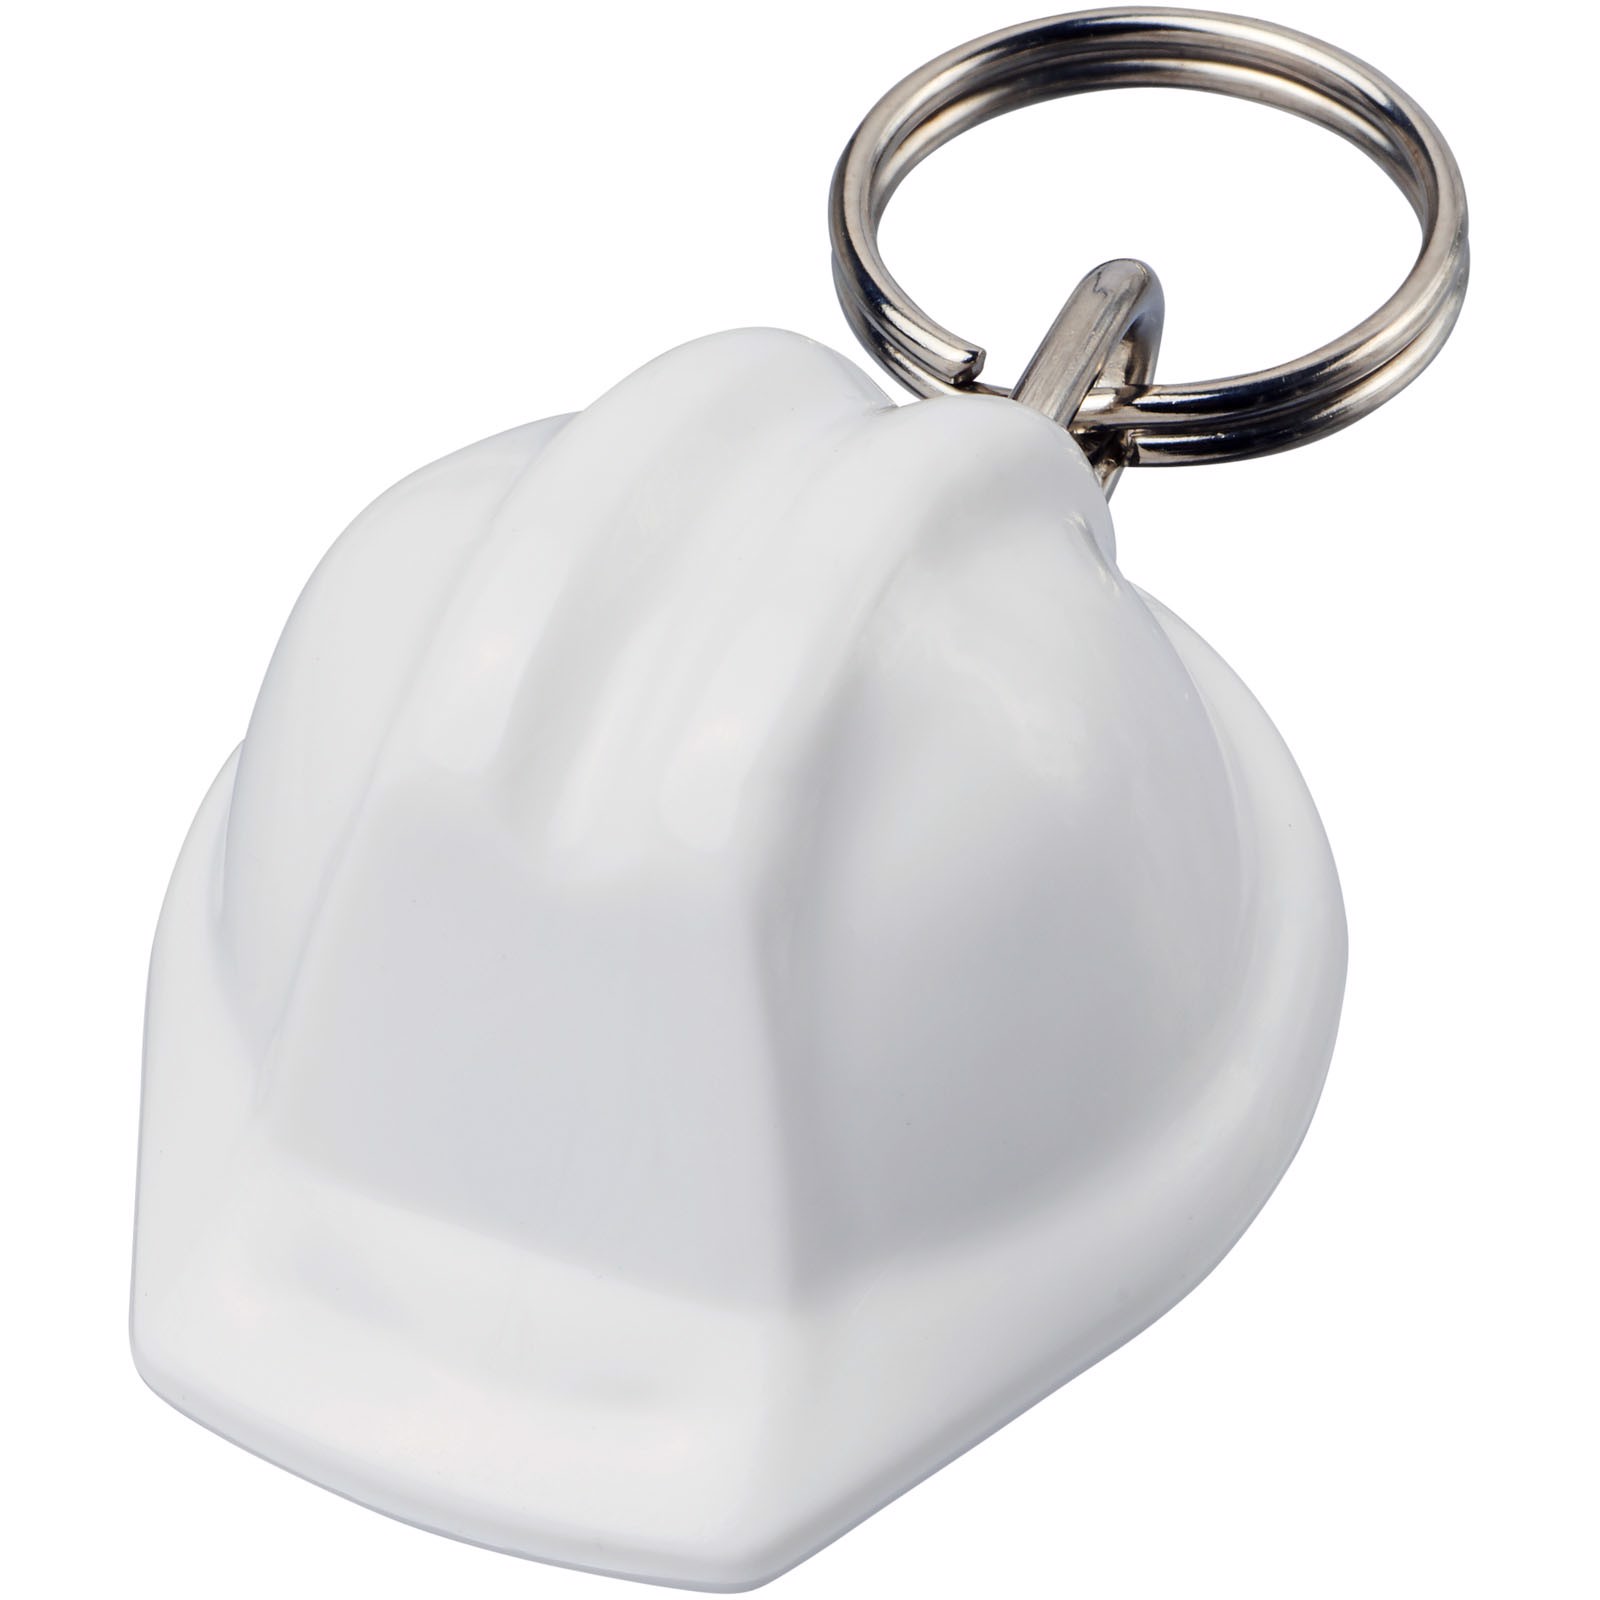 Kolt hard-hat-shaped keychain - White